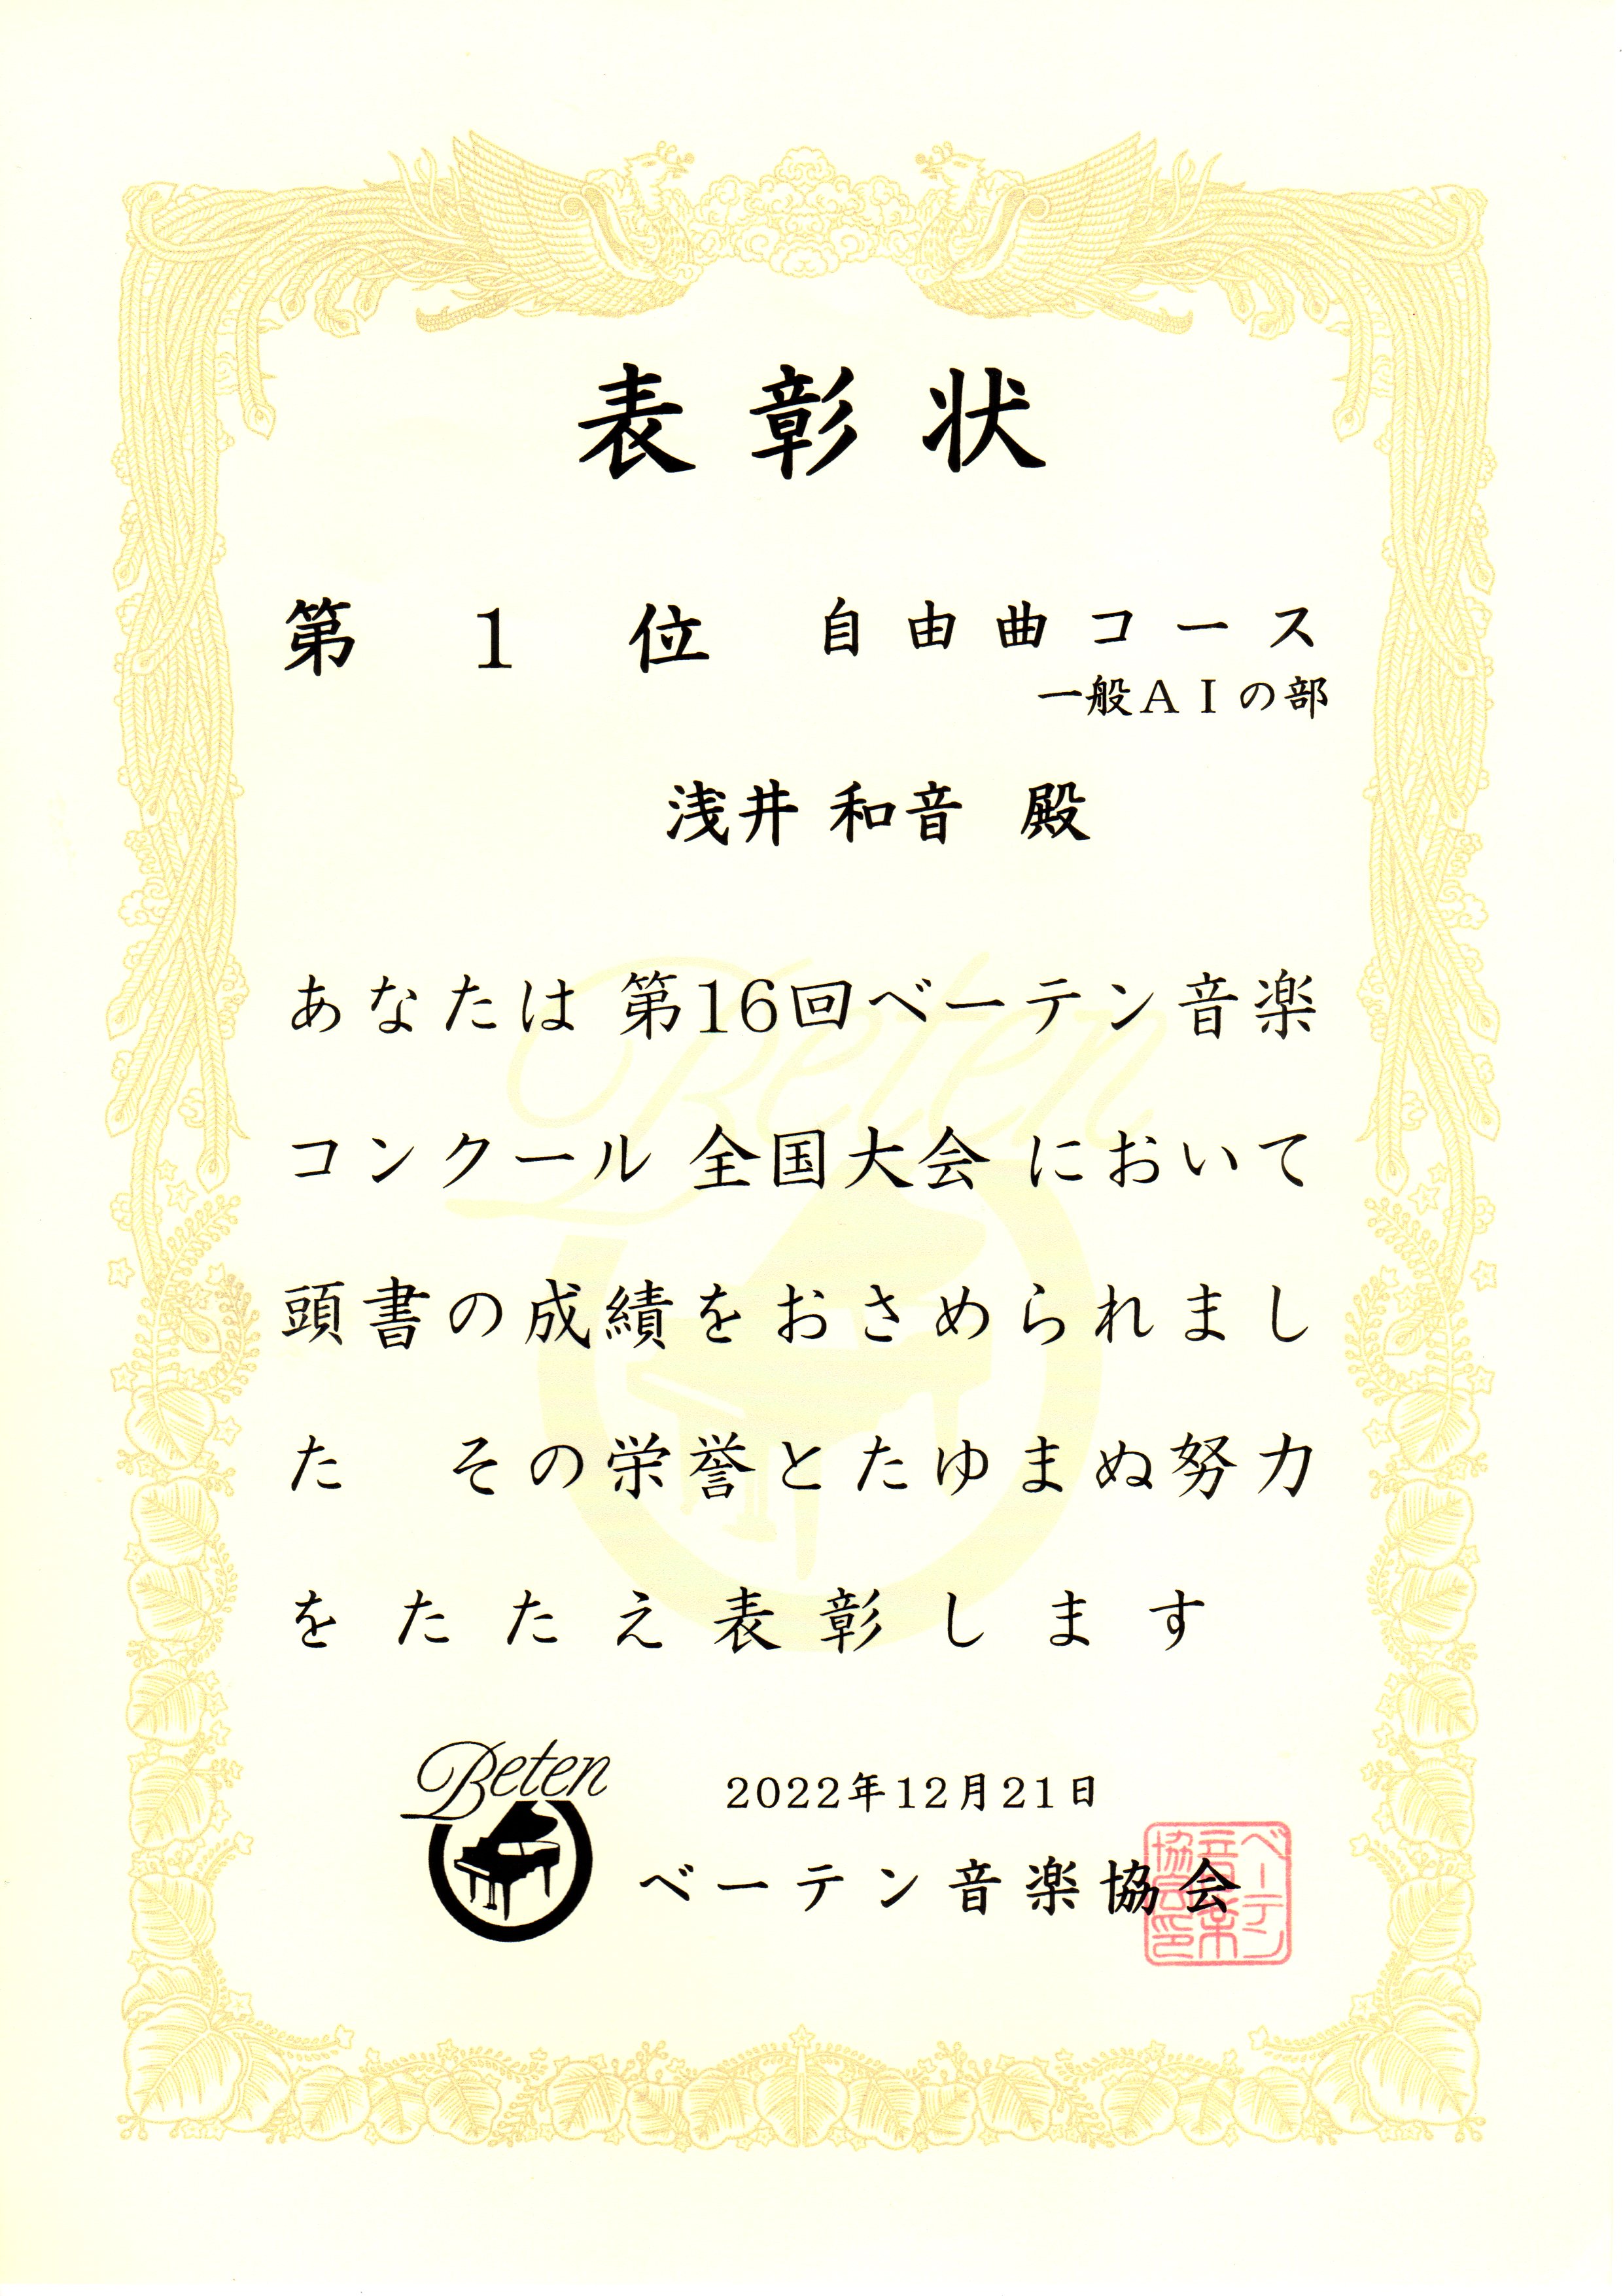 本学卒業生の浅井和音さんが「第16回ベーテン音楽コンクール全国大会」において第１位を受賞しました